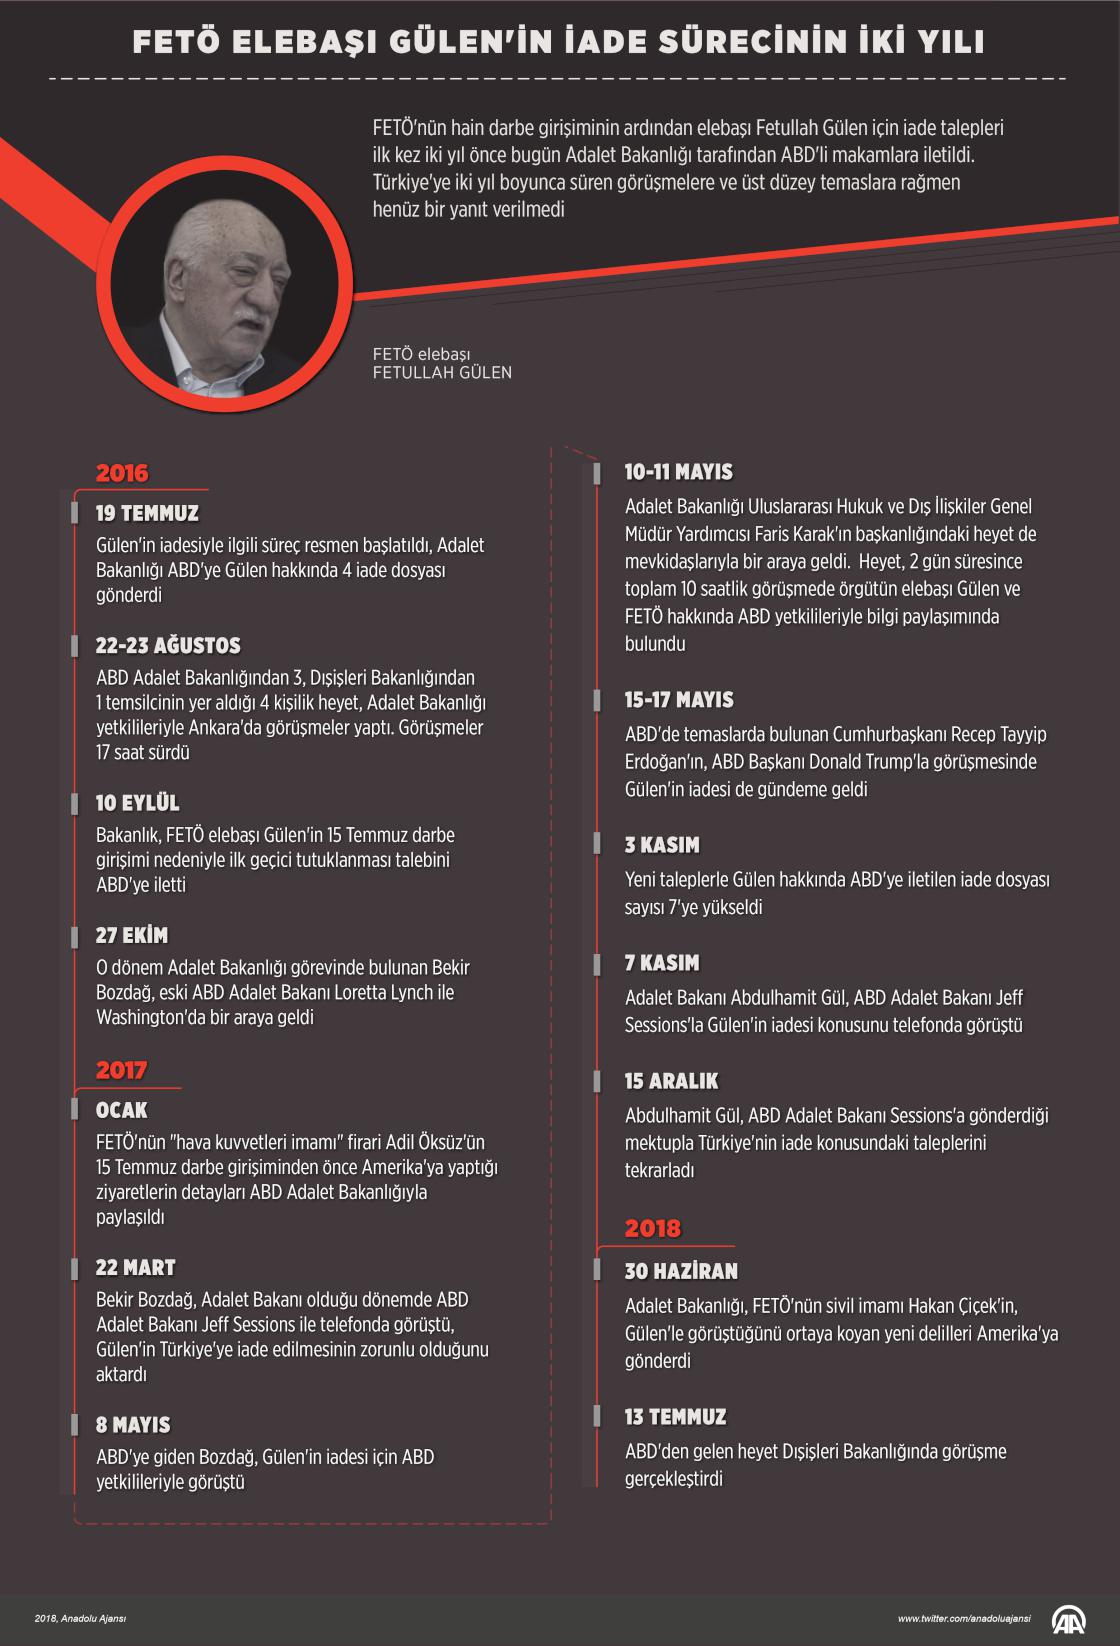 FETÖ elebaşı Gülen'in iade sürecinin iki yılı